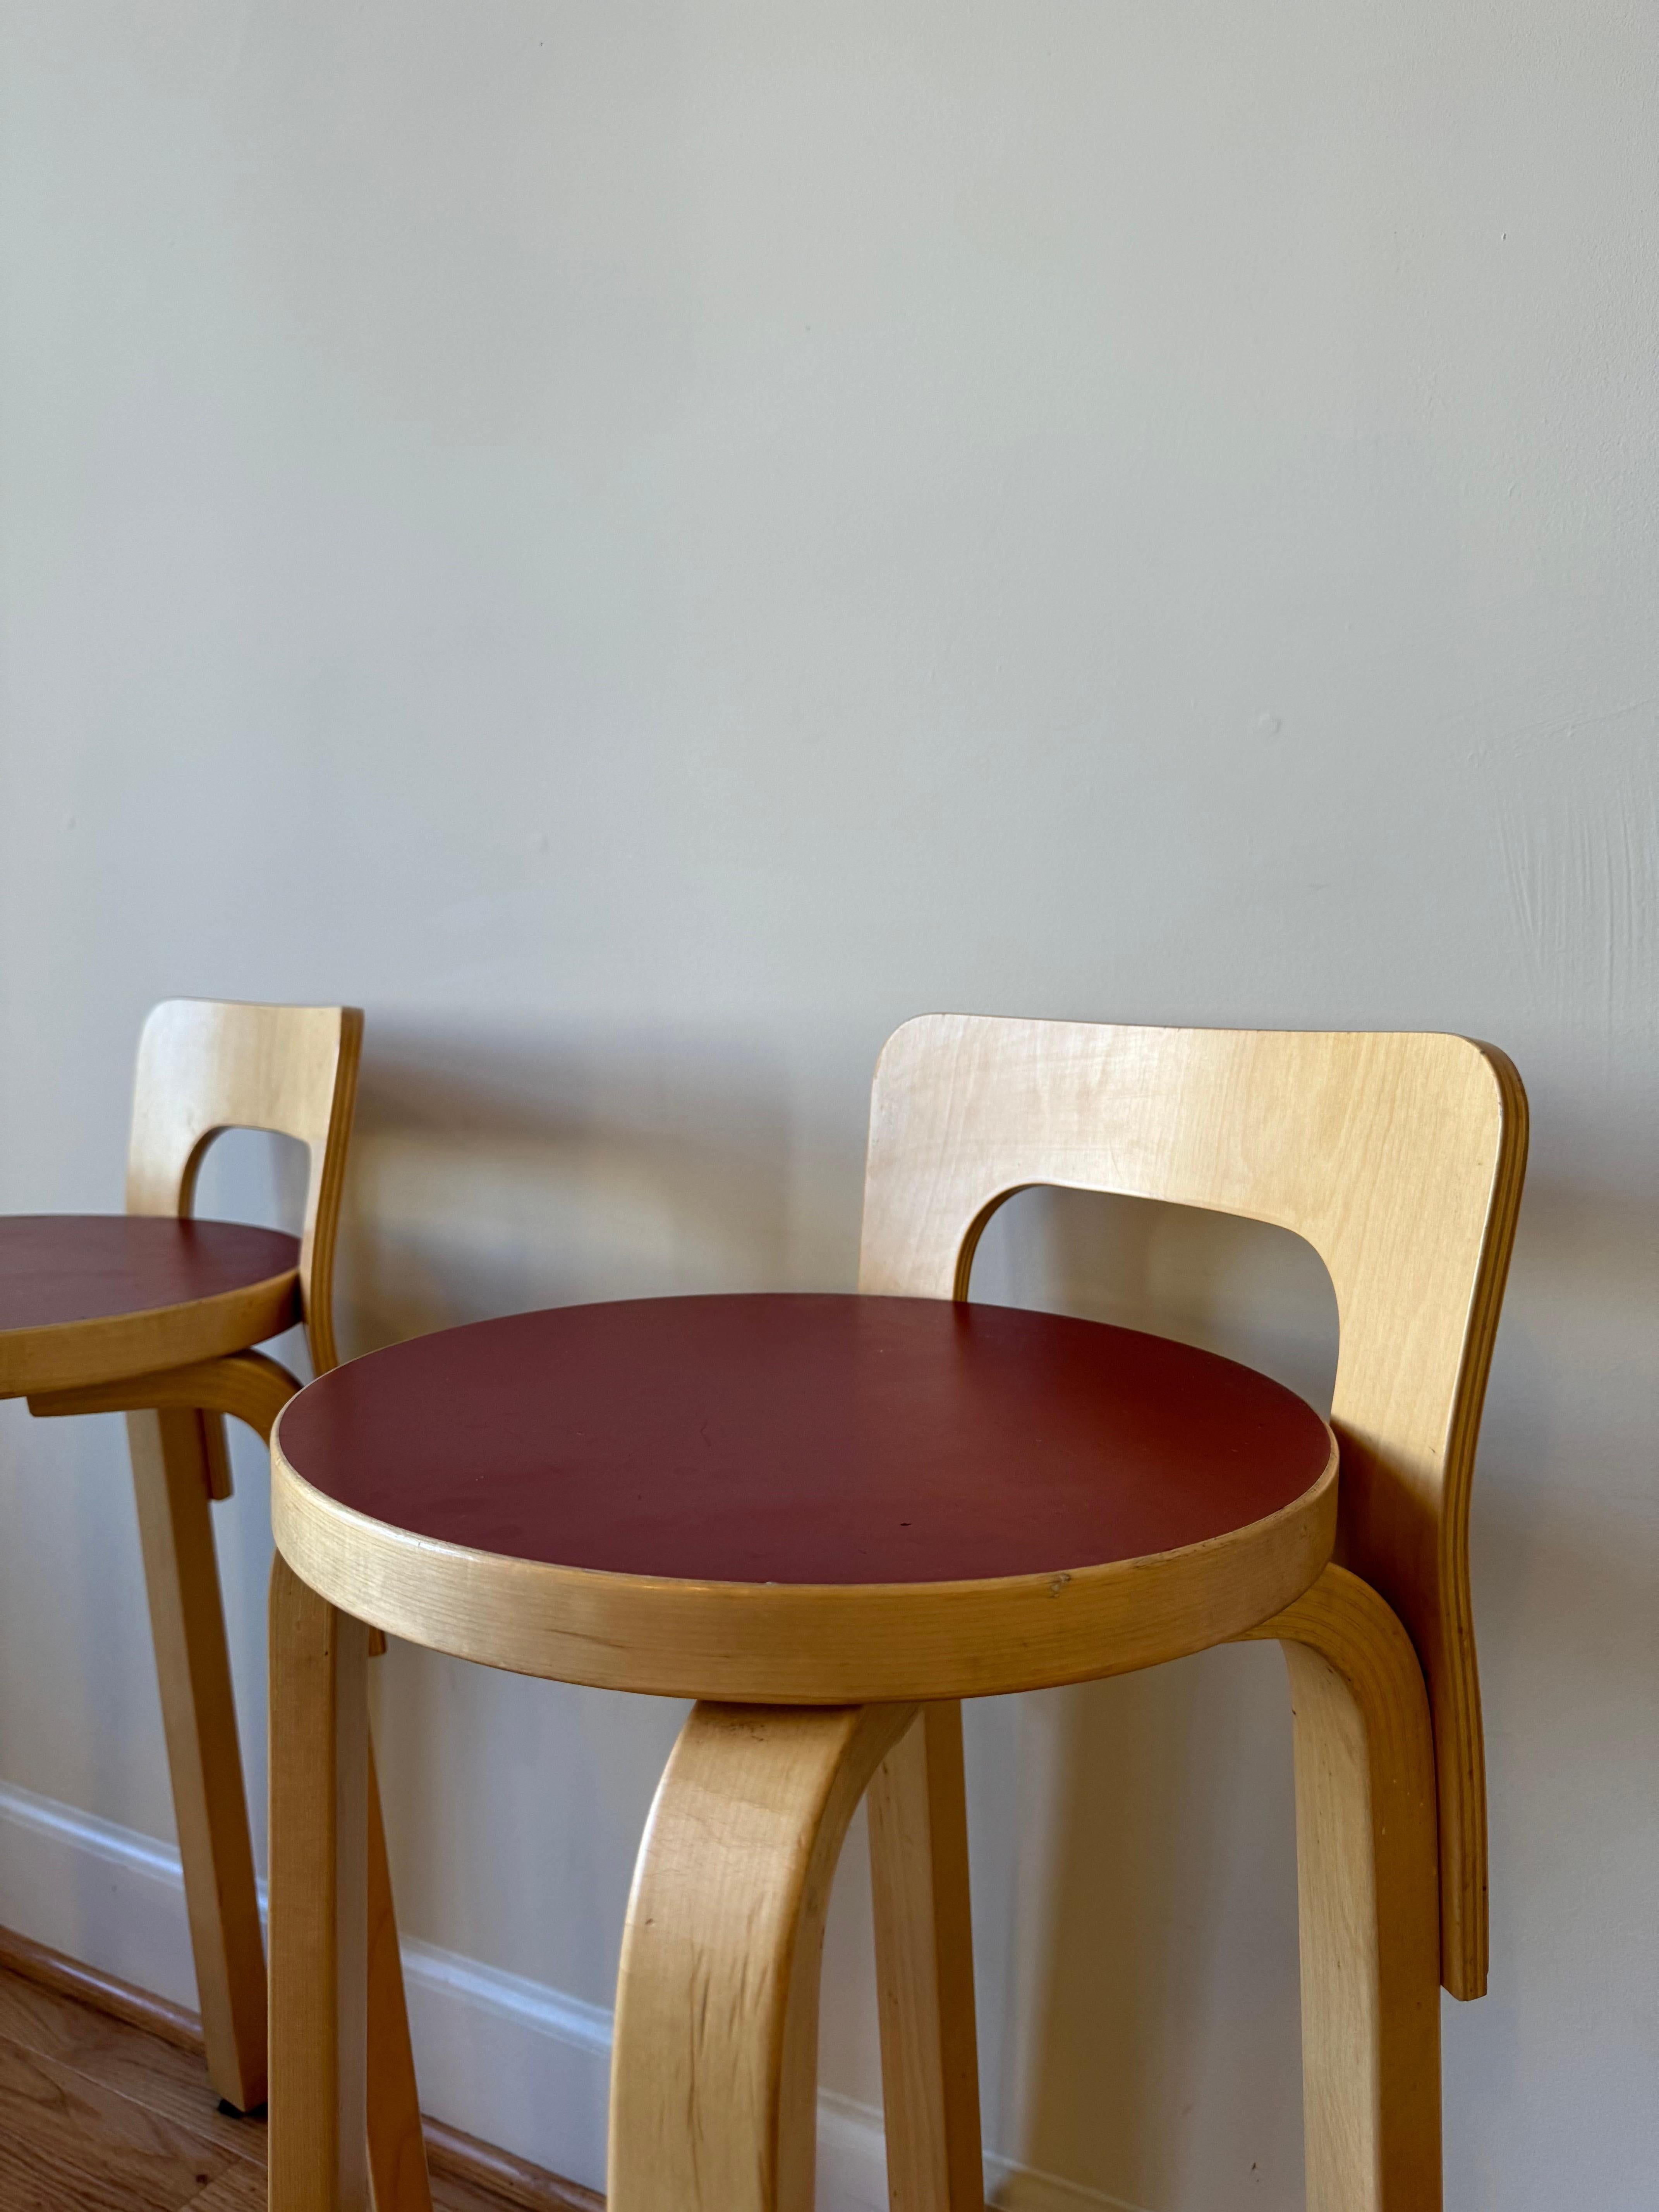 High Chair K65 von Alvar Aalto für Artek (Sitz aus rotem Linoleum) 2